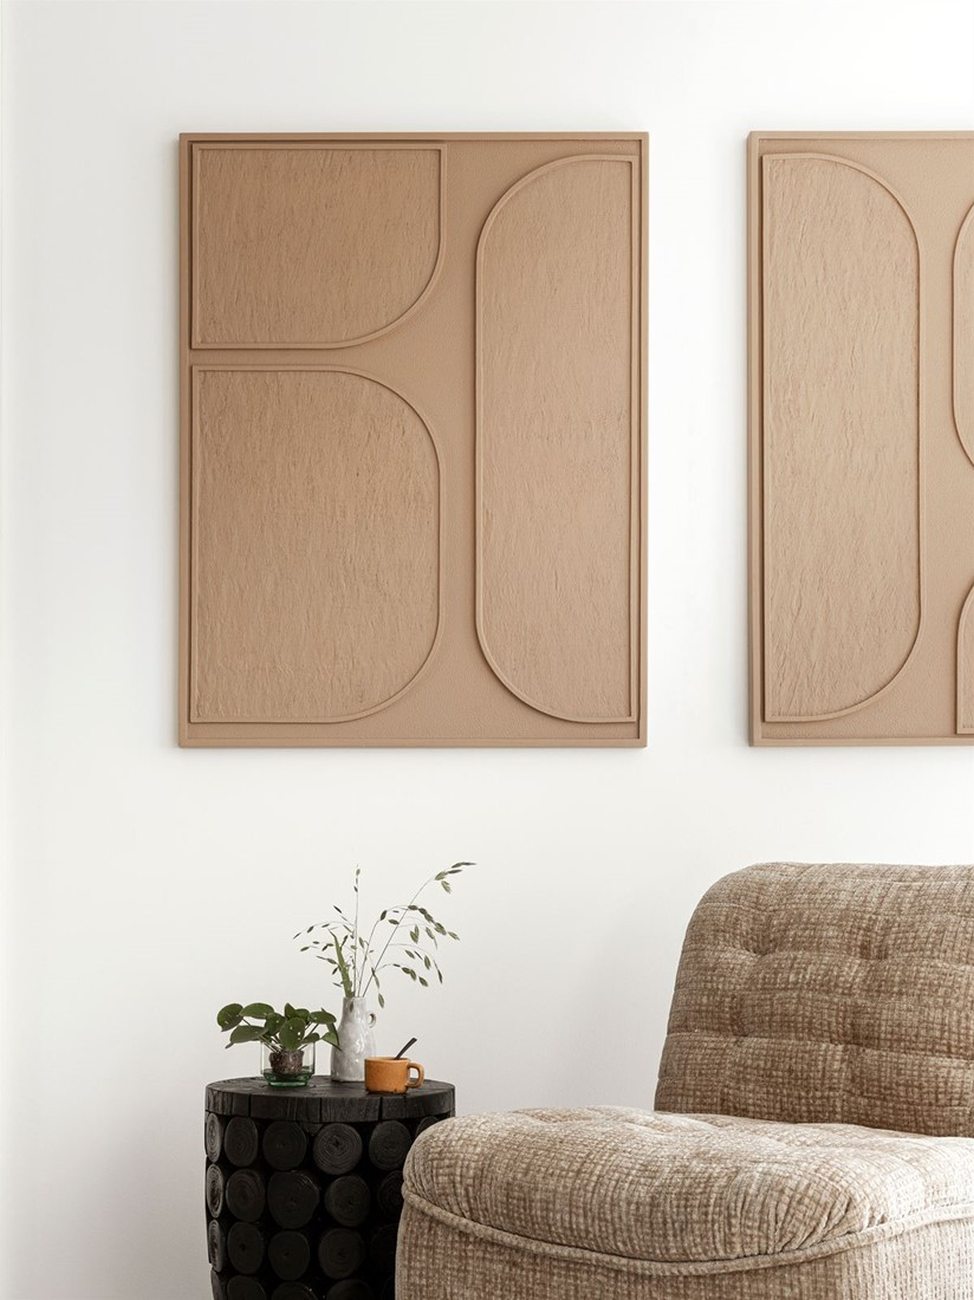 Das Wandpaneel Lorcan überzeugt mit seinem modernen Design. Gefertigt wurde es aus Holzrinde, welches einen braunen Farbton besitzt. Das Wandpaneel besitzt eine Größe von 102x76 cm.